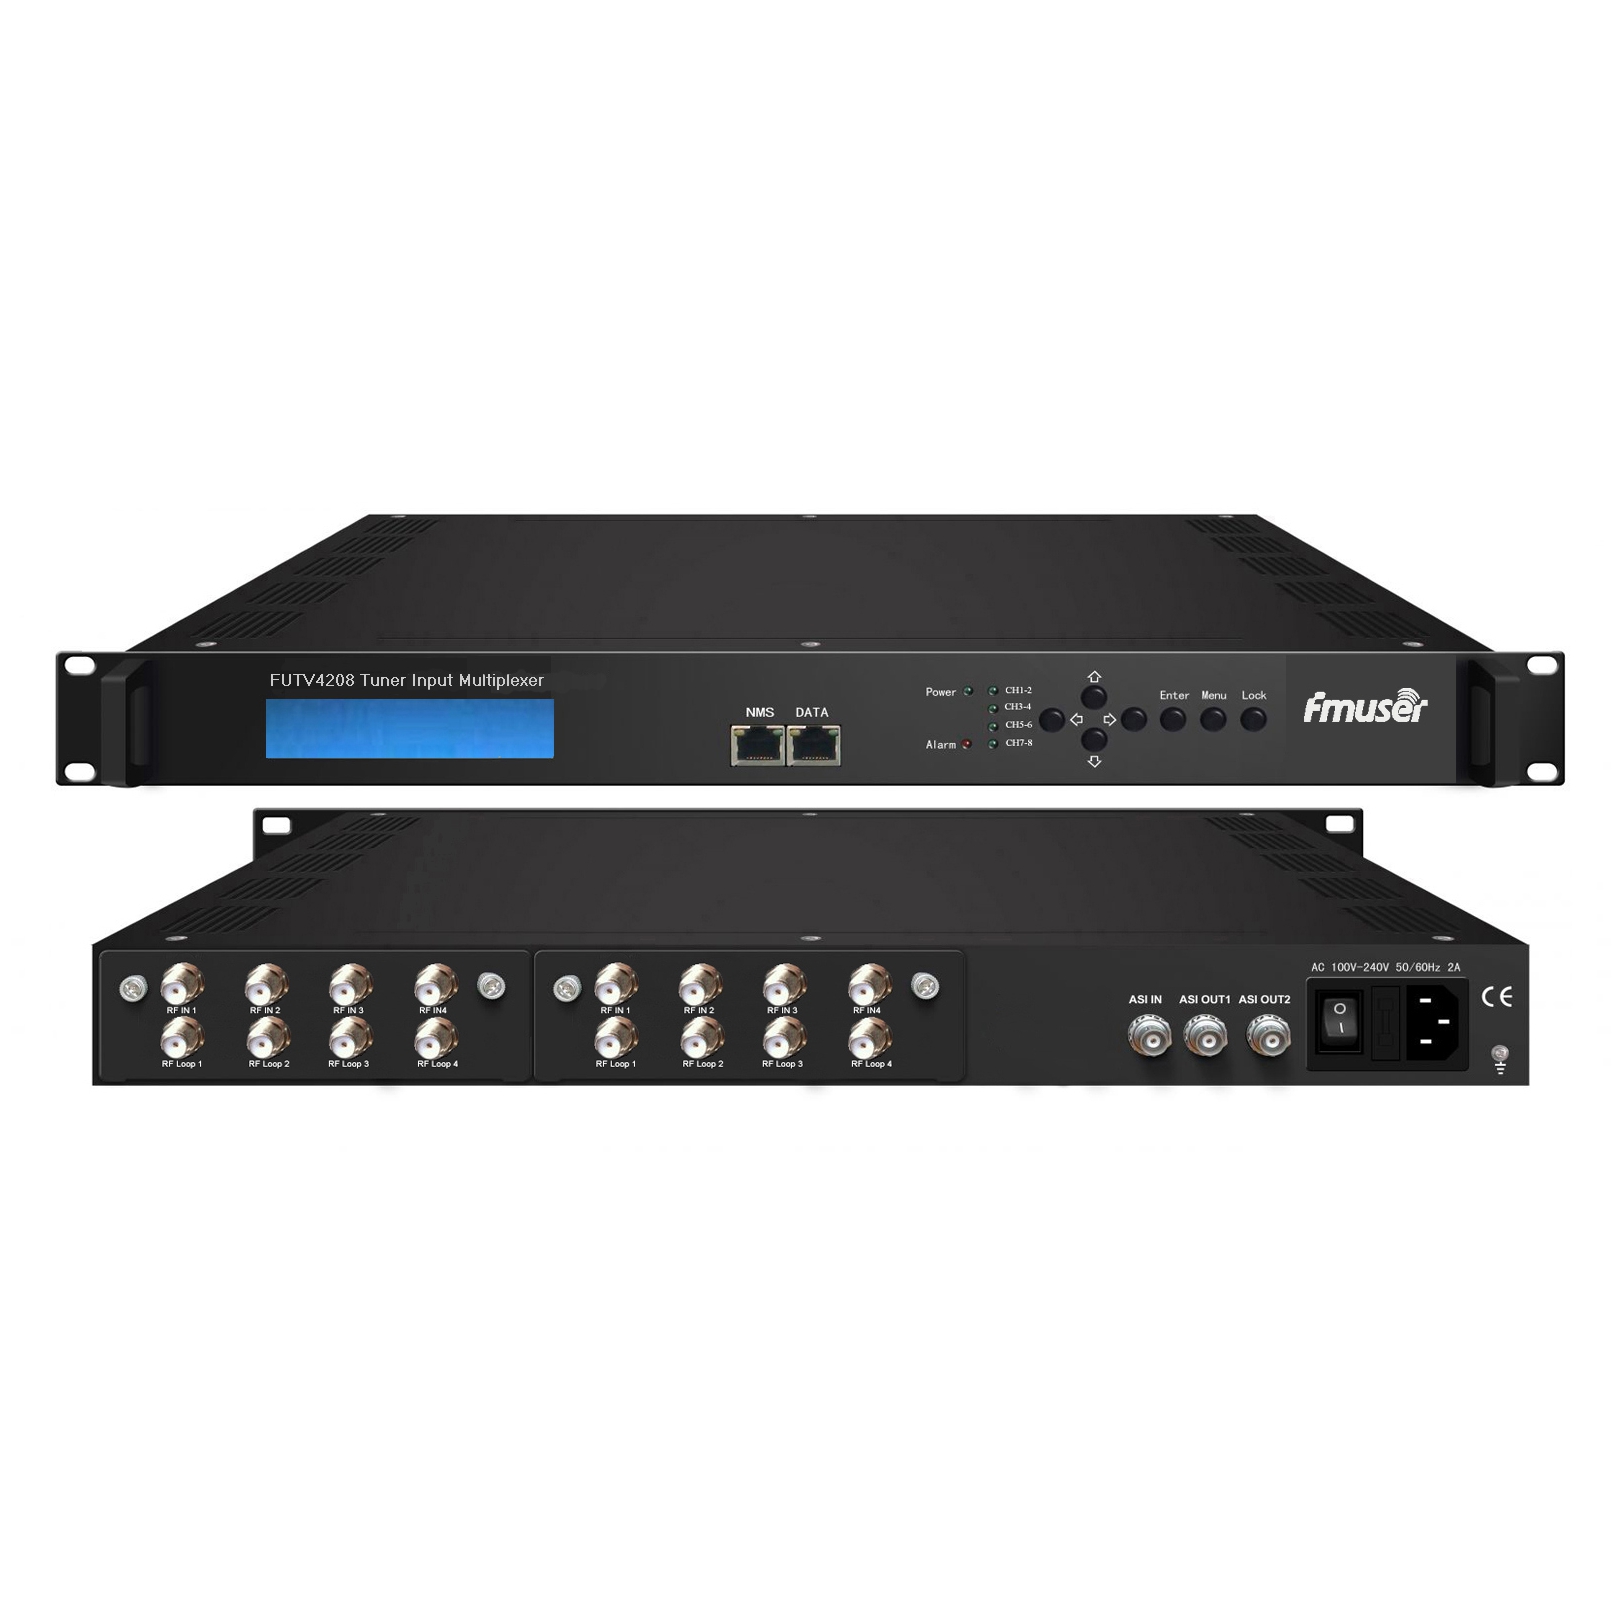 FMUSER FUTV4208 8 Tuner IRD (8 DVB-S2 / T RF vstup, 1 ASI In, 2 ASI 1 IP výstup) Multiplexor